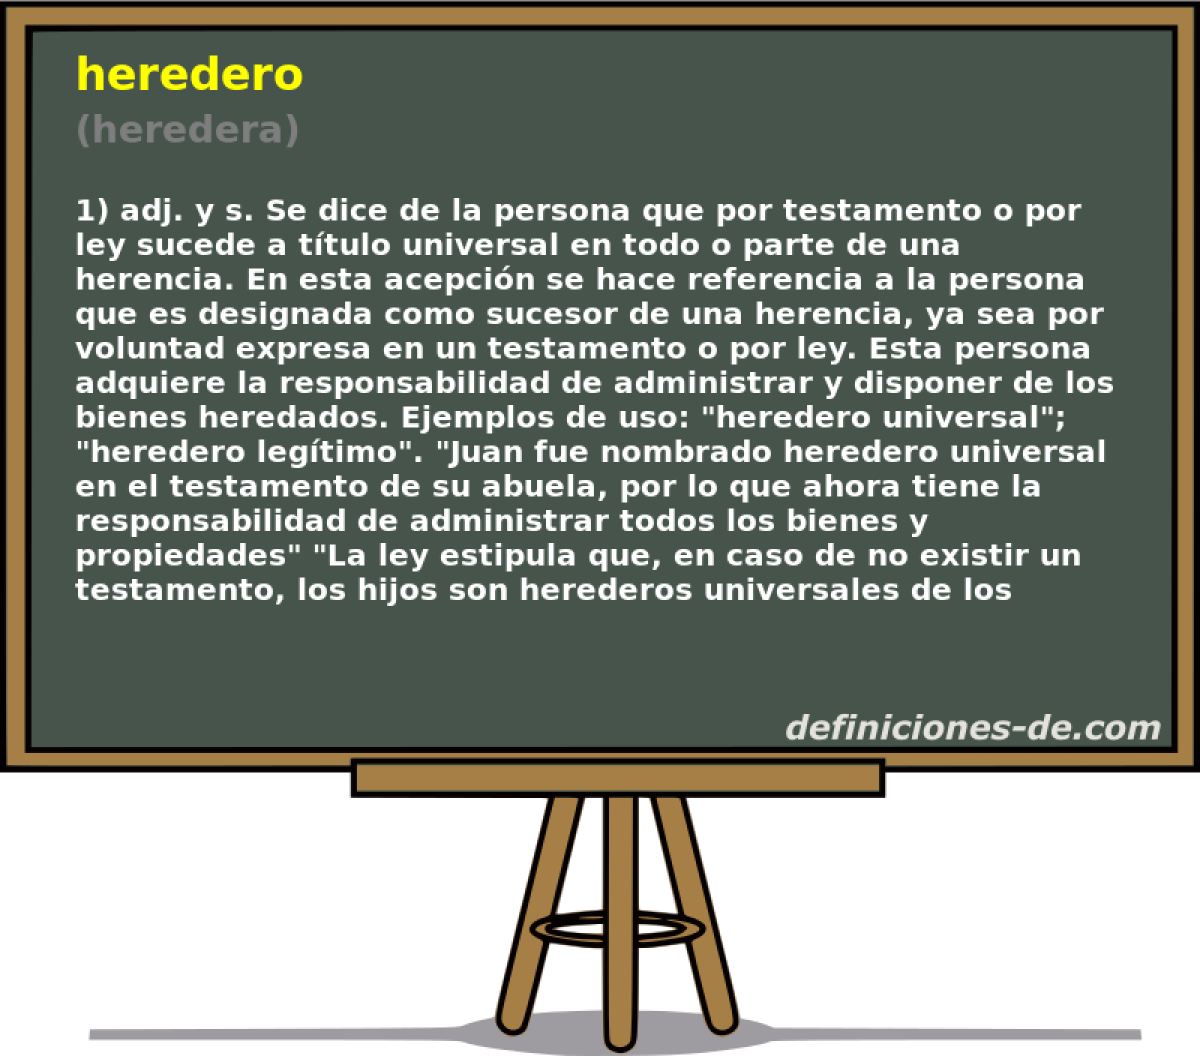 heredero (heredera)